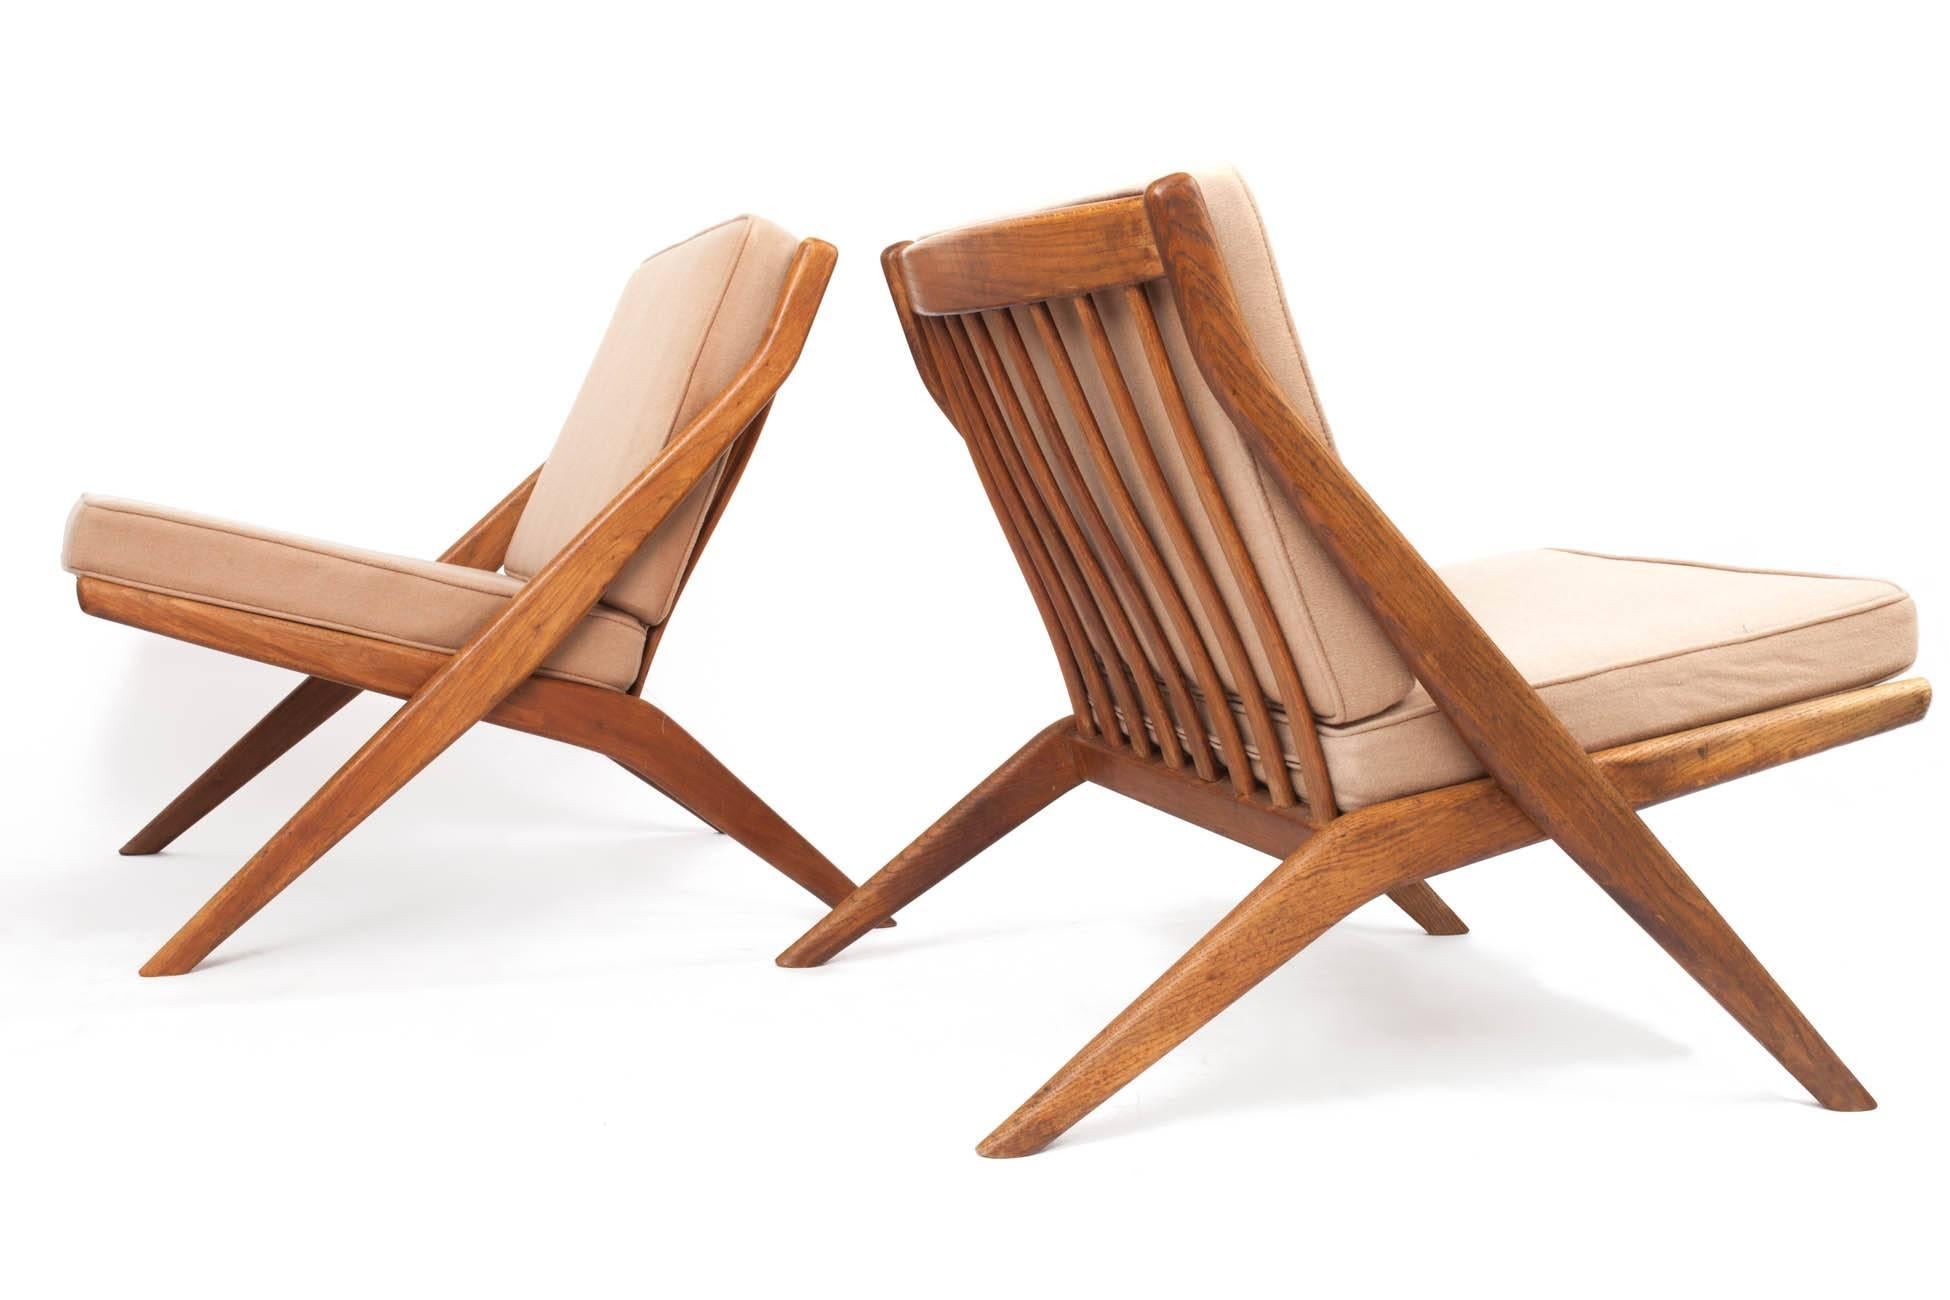 American Folke Ohlsson: Pair of Tan Scandinavian Modern Scissor Chairs in Walnut, 1950's